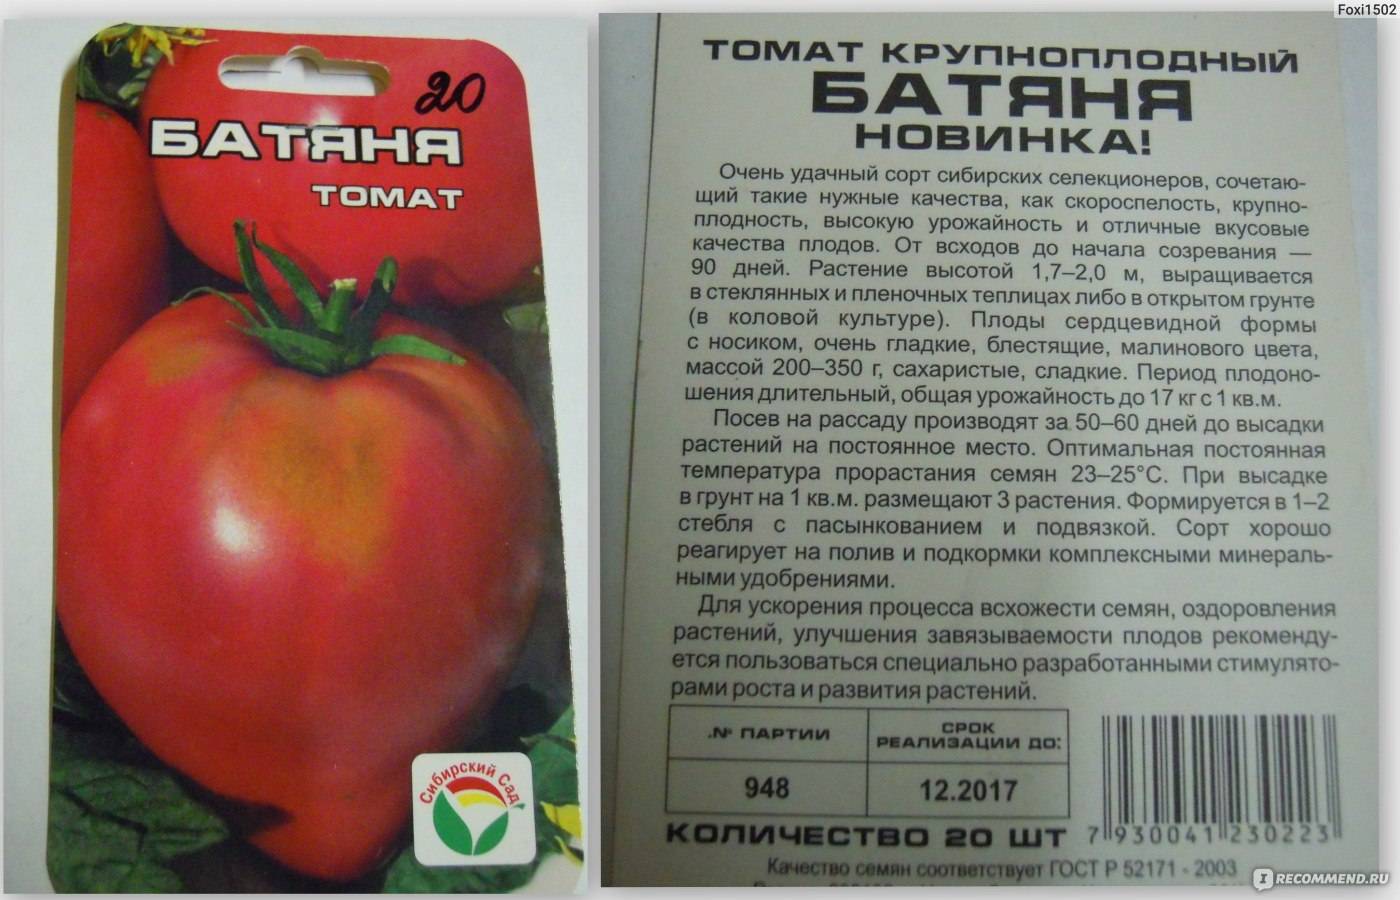 Сорт томата «белле f1»: описание, характеристика, посев на рассаду, подкормка, урожайность, фото, видео и самые распространенные болезни томатов